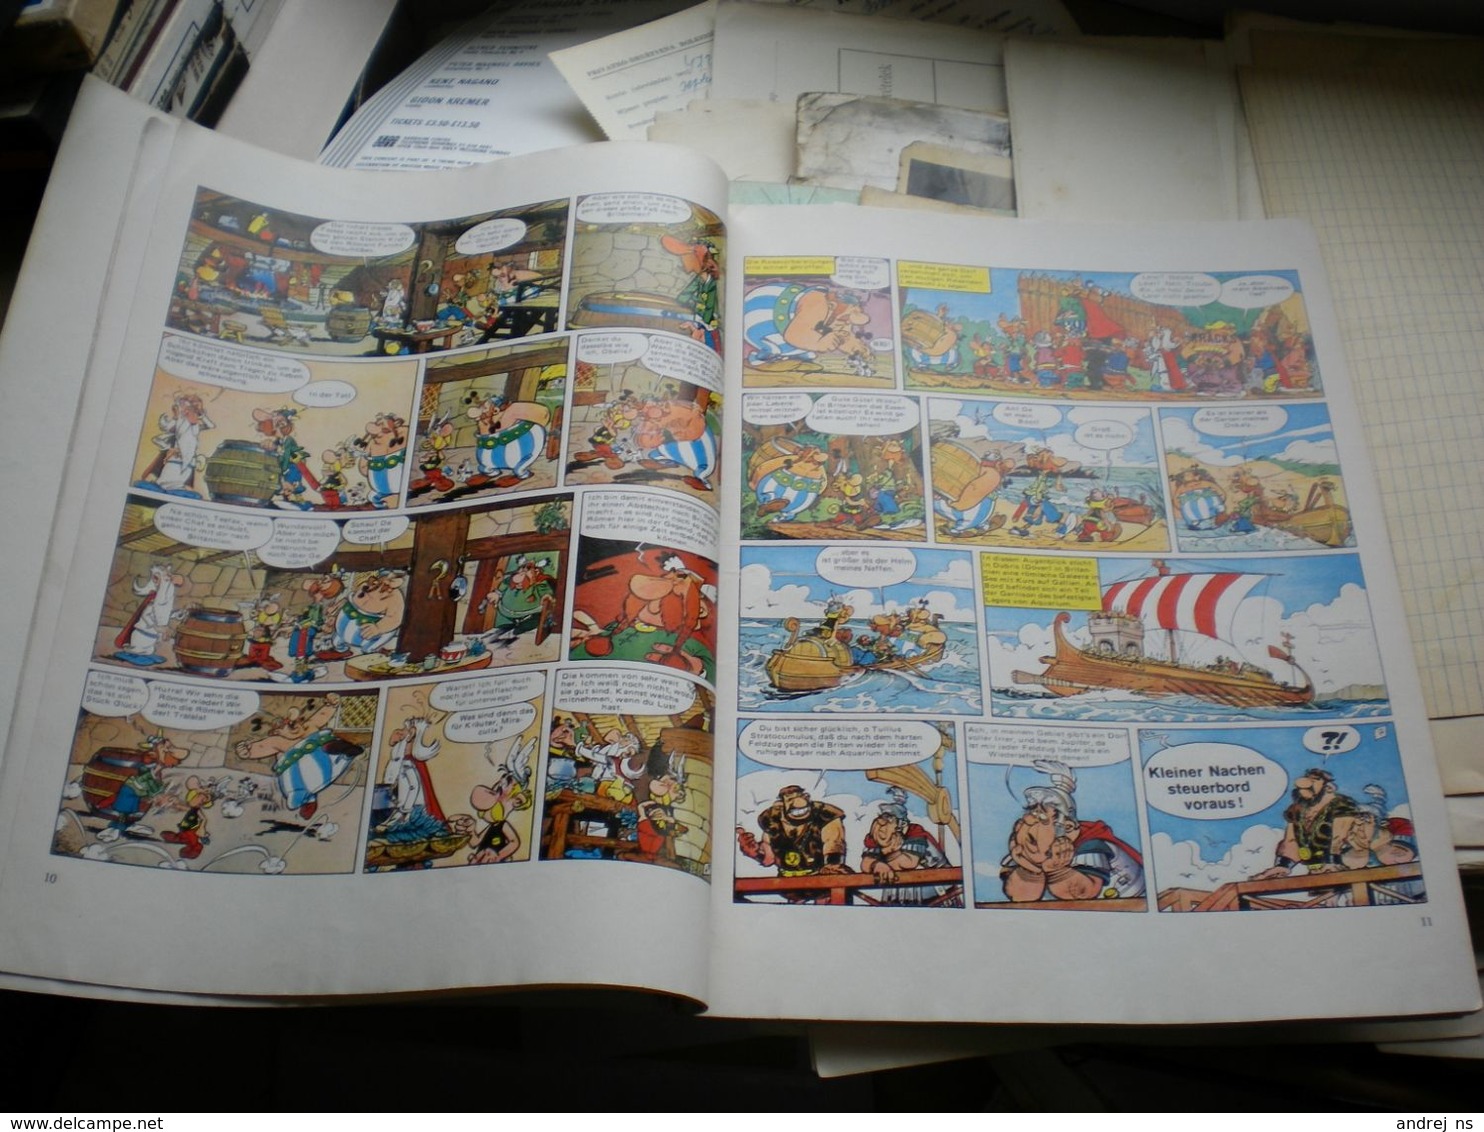 Asterix Bei Den Briten 48 Pages - Asterix